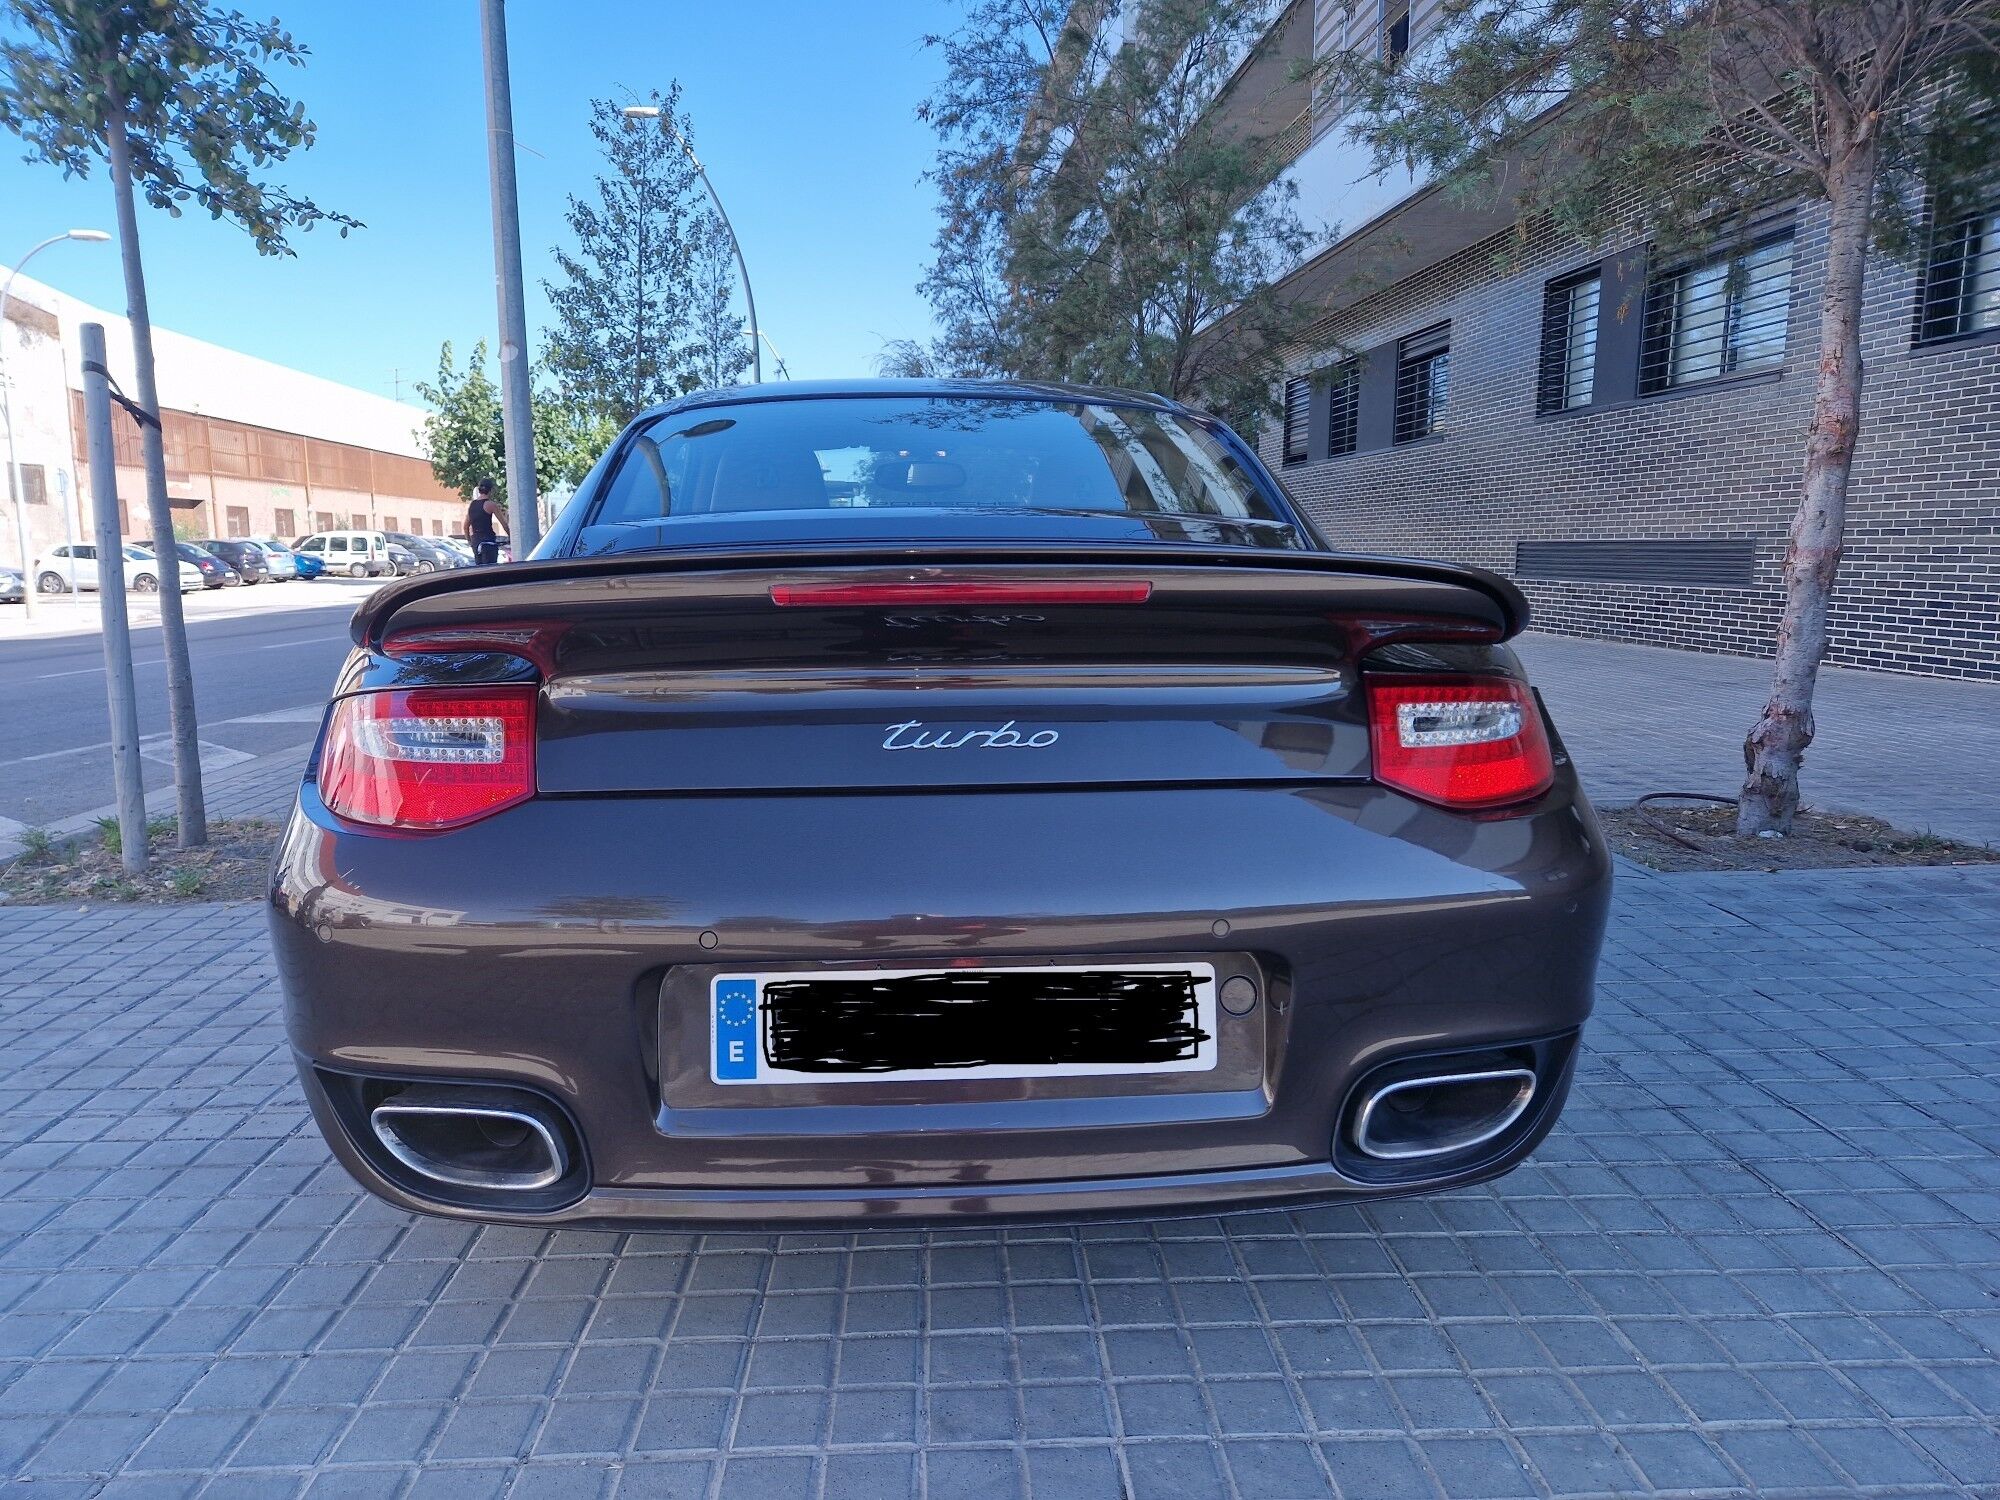 PORSCHE 911 (Turbo Coupé) en Barcelona